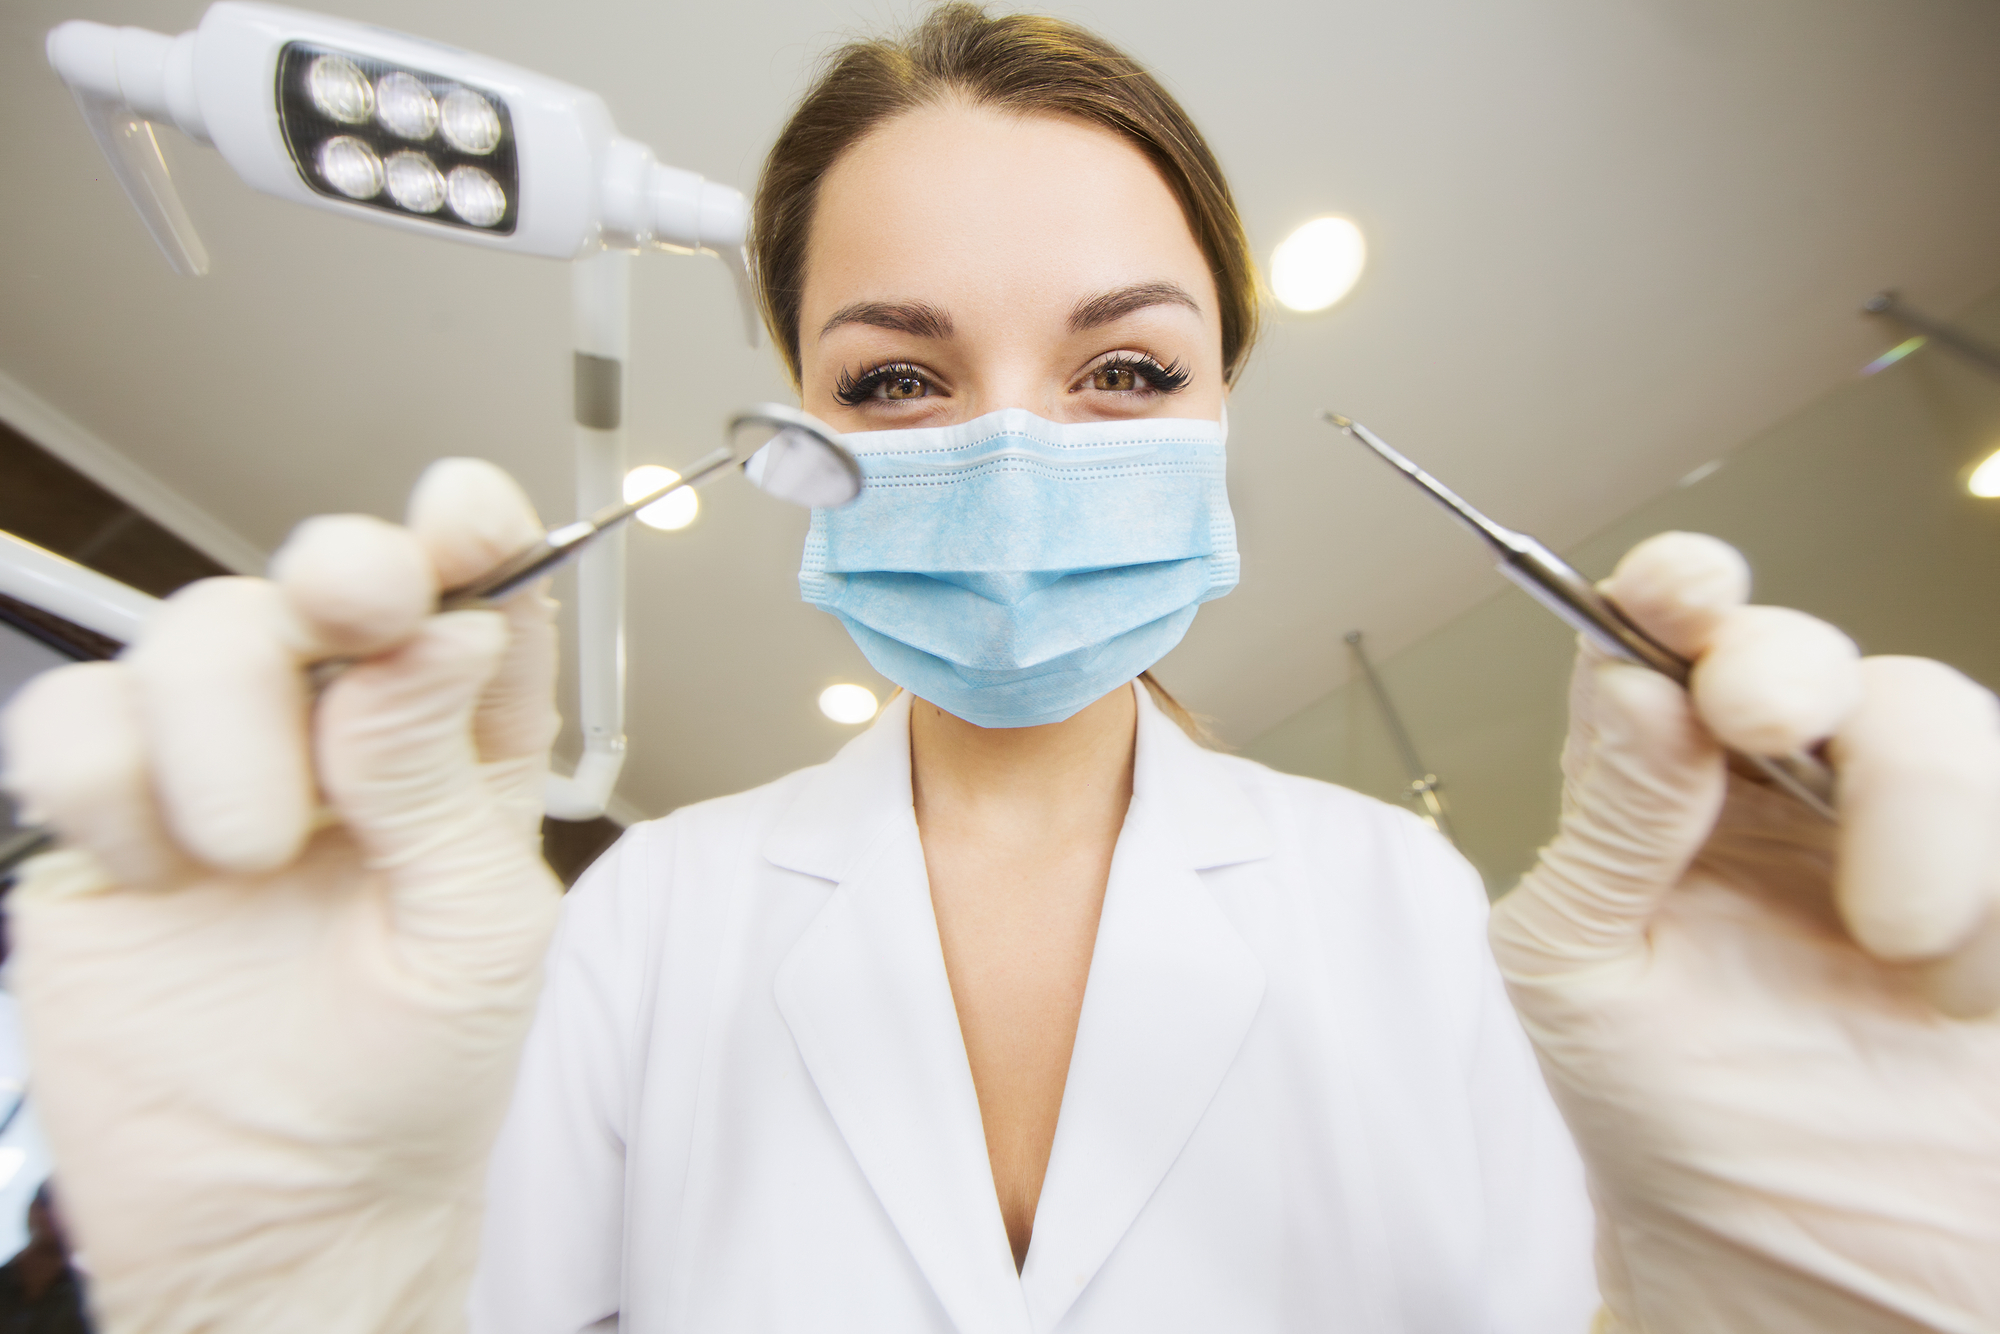 Стоматолог в перчатках с инструментом